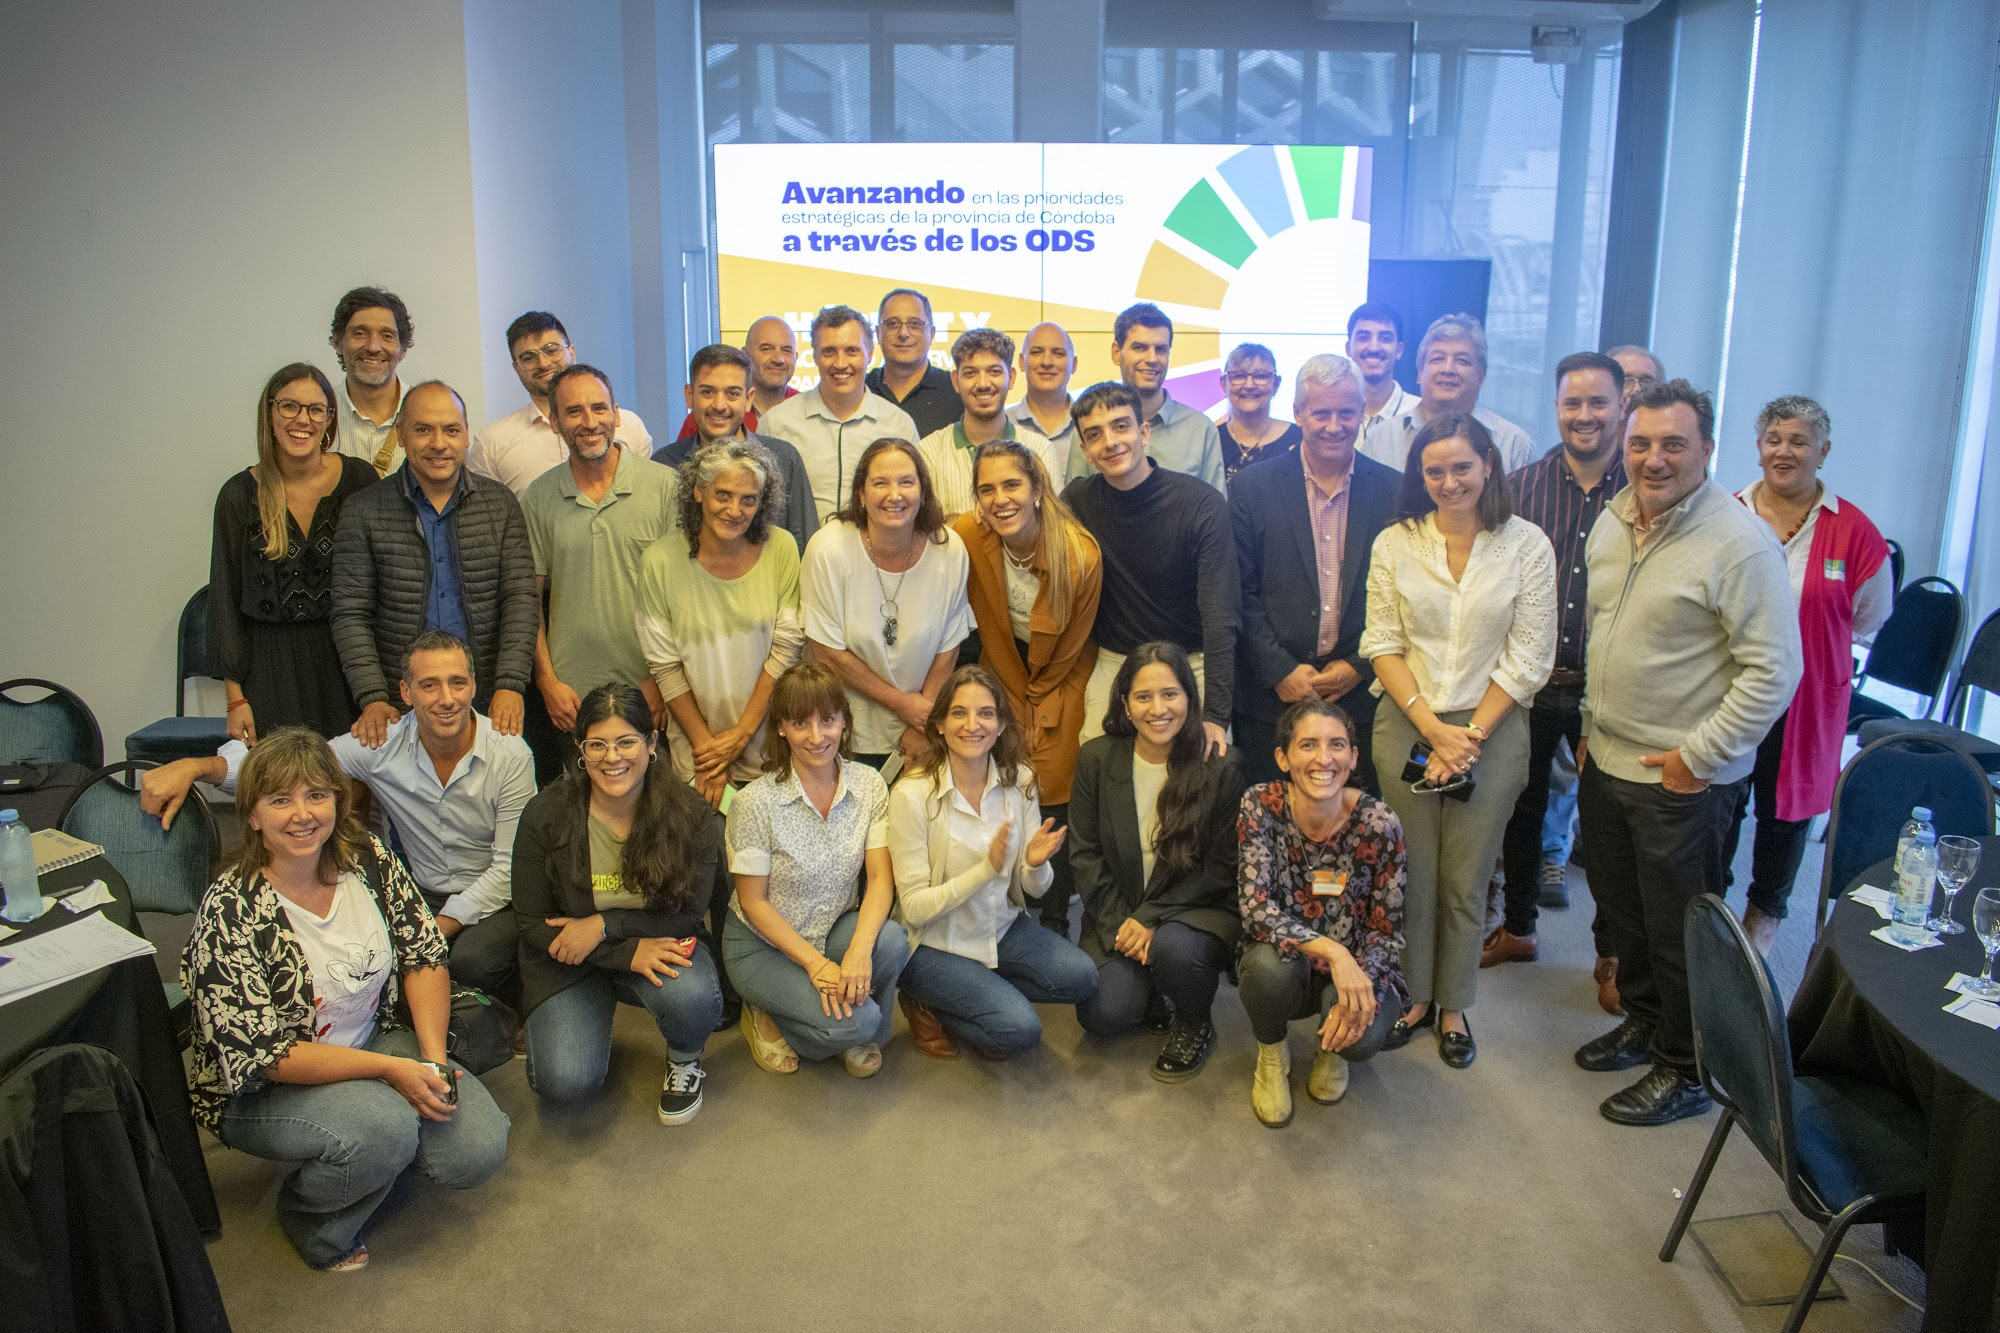 Renatre en el encuentro que busca visibilizar las necesidades del sector rural en la provincia de Córdoba